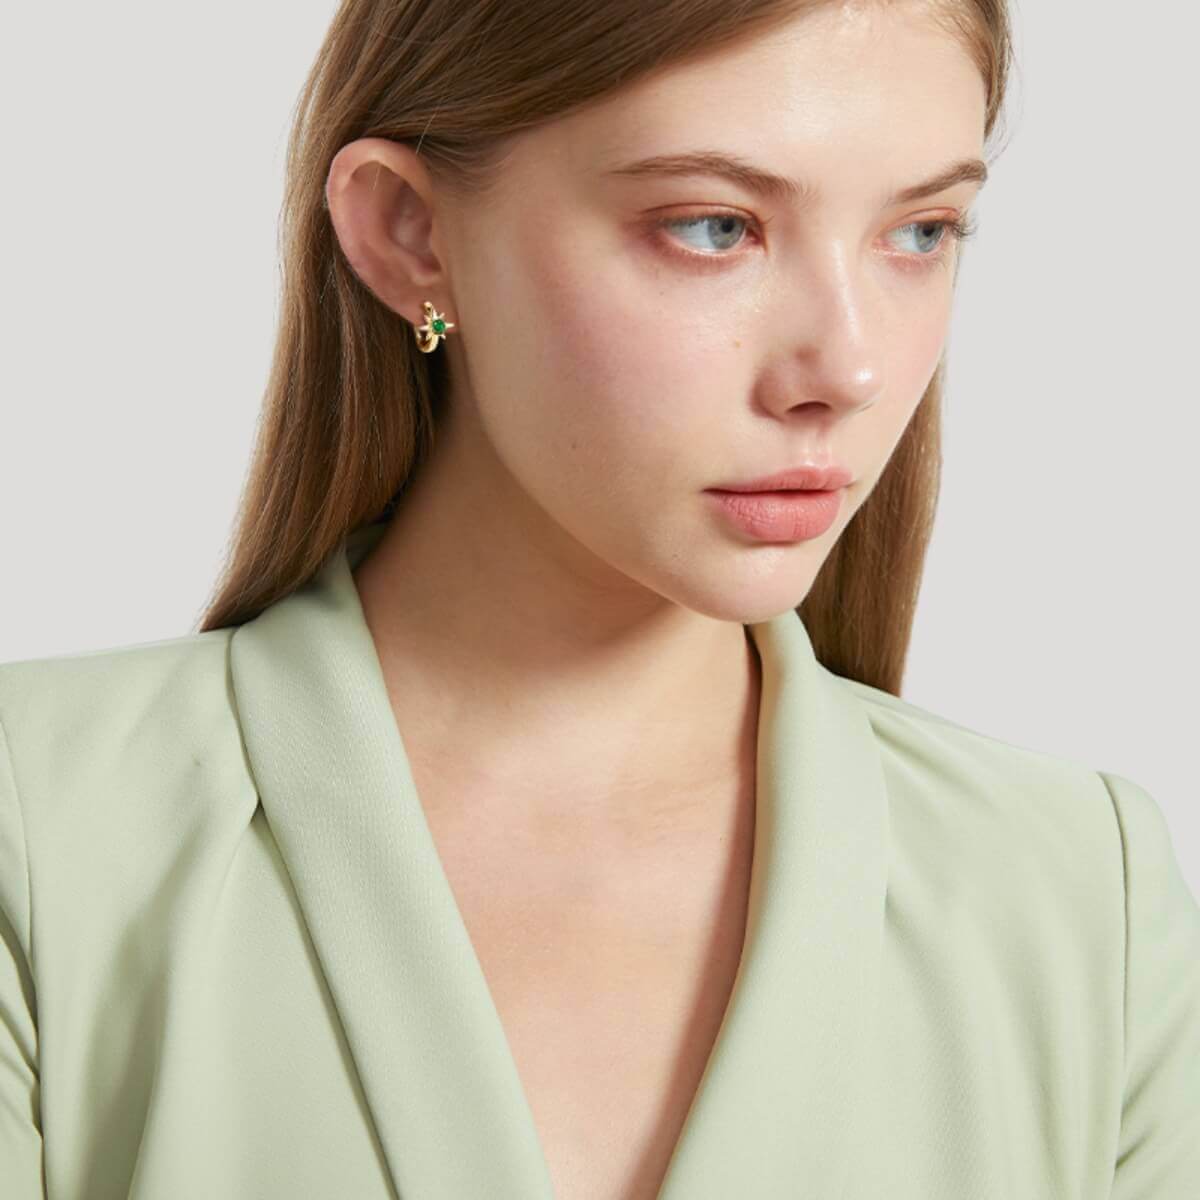 Solitaire Emerald Hoop Earrings